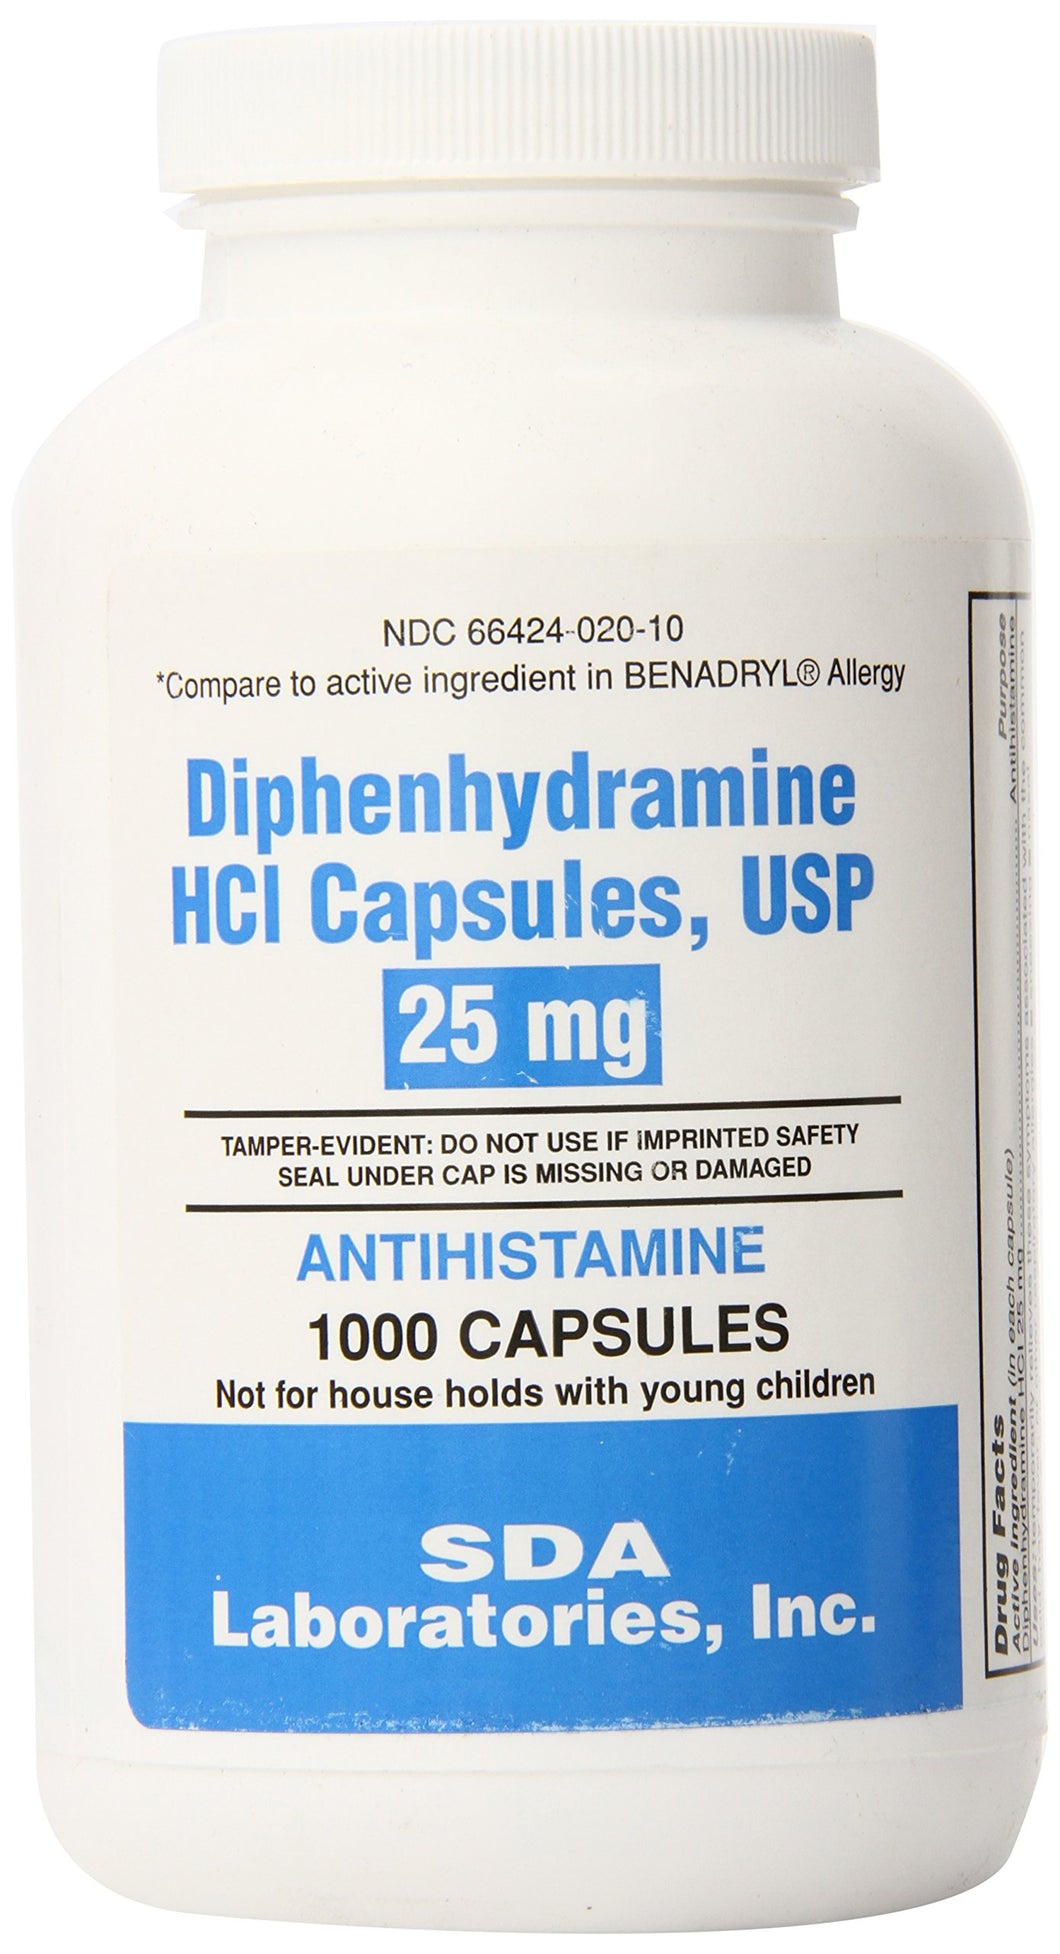 SDA Laboratories Diphenhydramine Capsules, 25mg, 1000 Count